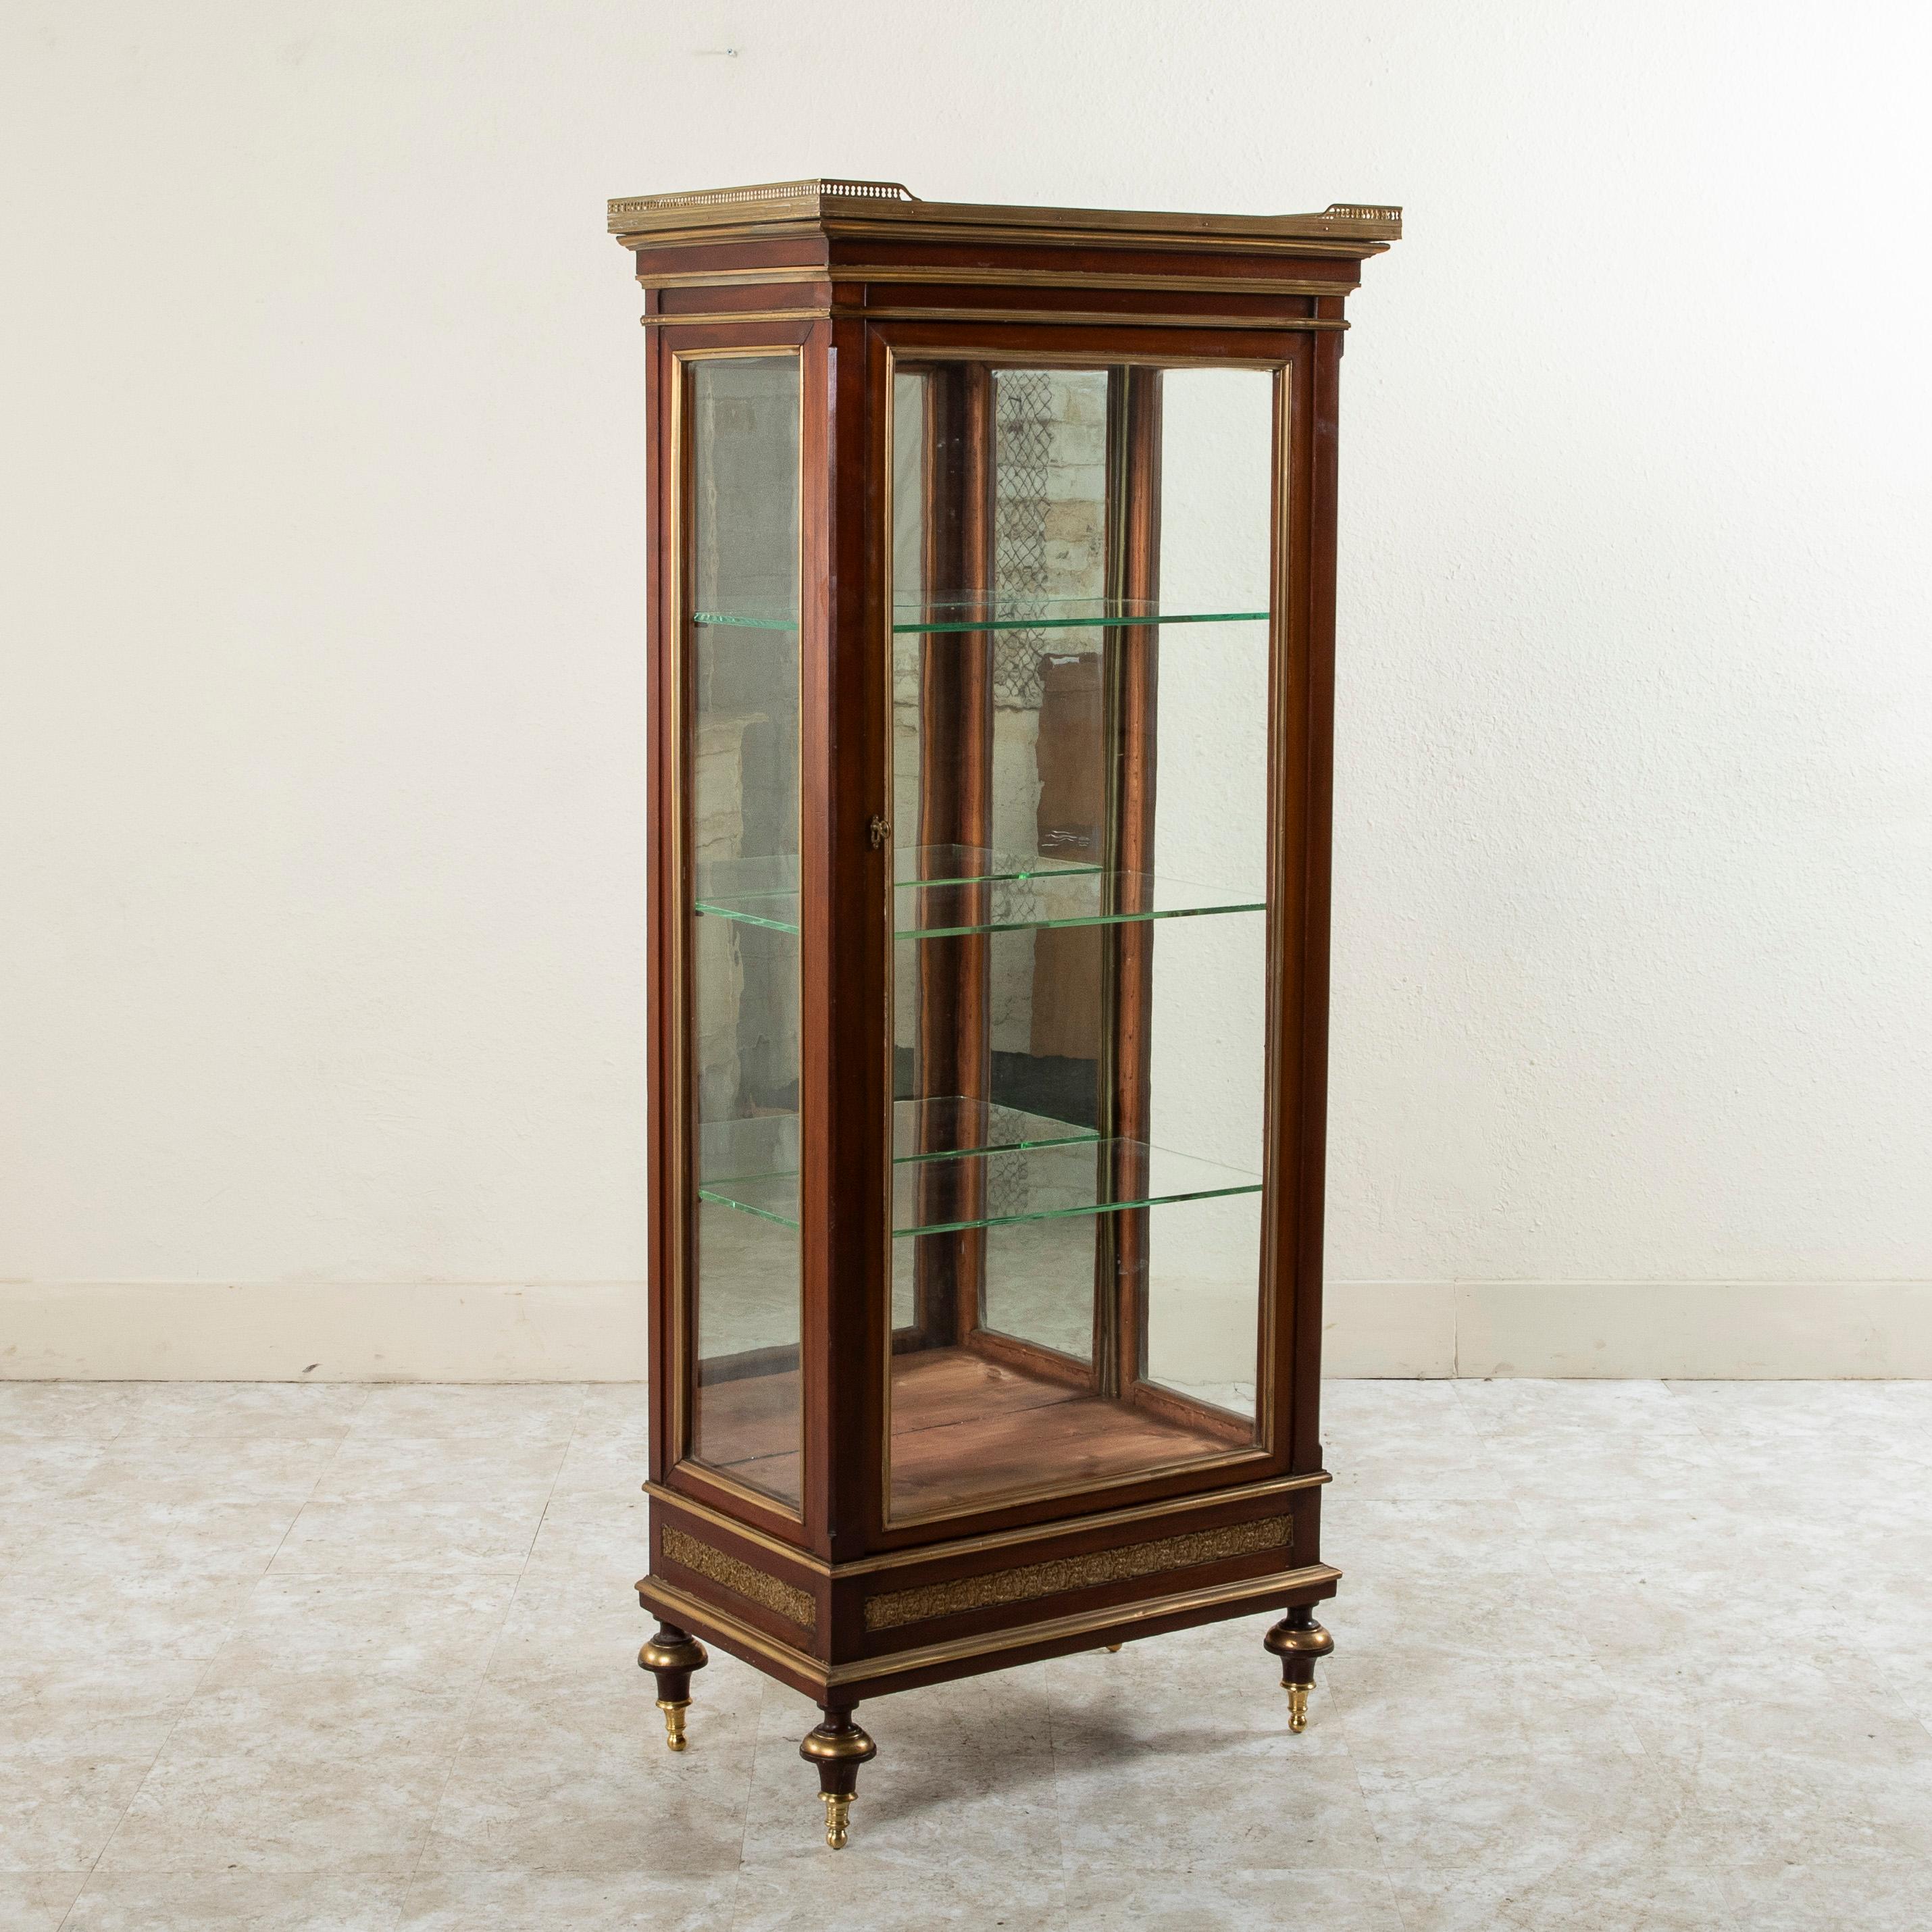 Avec des vitres sur trois côtés, cette vitrine en acajou de style Louis XVI, datant du milieu du XIXe siècle, est idéale pour exposer une collection de qualité. Reposant sur des pieds à fleurons tournés en bronze, cette pièce présente également des